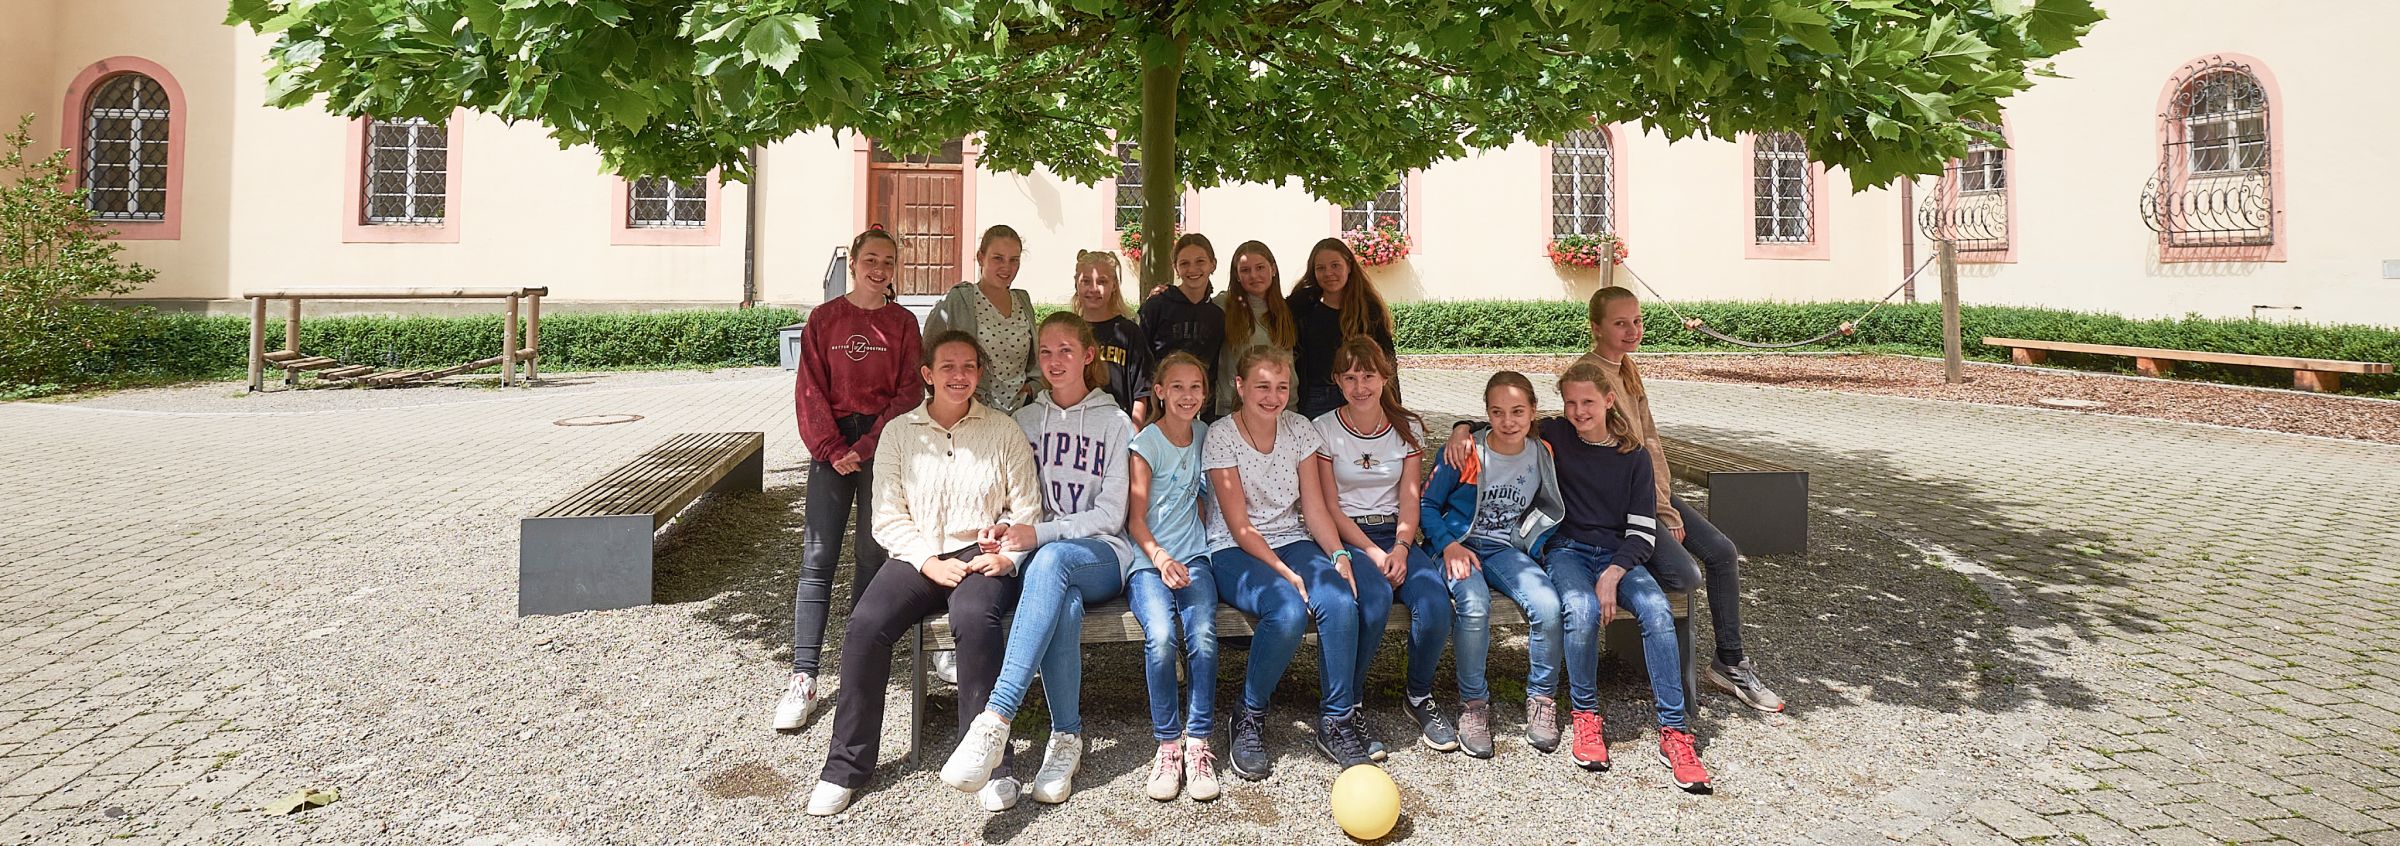 Mädchengruppe im Innenhof des historischen Gebäudes 